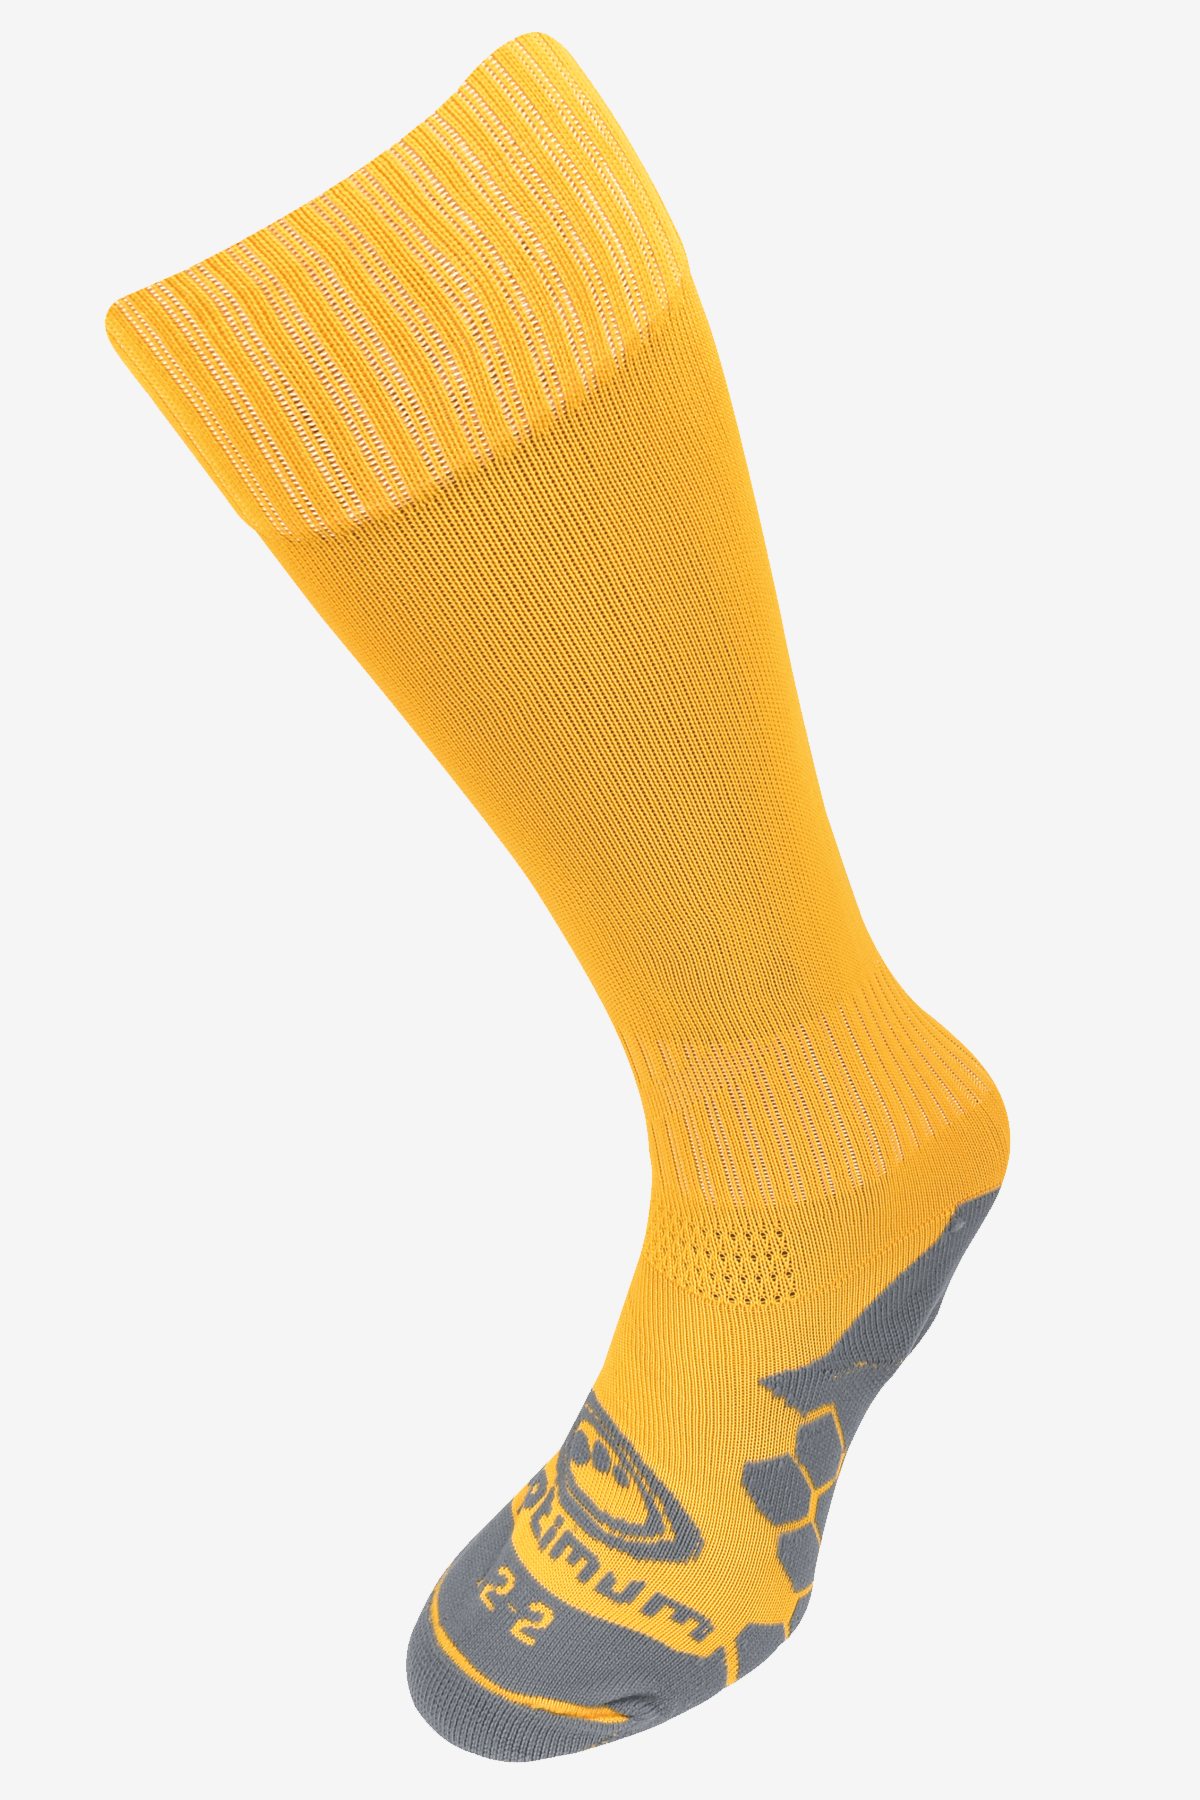 Wheatley Hills R.U.F.C Amber sock - Optimum